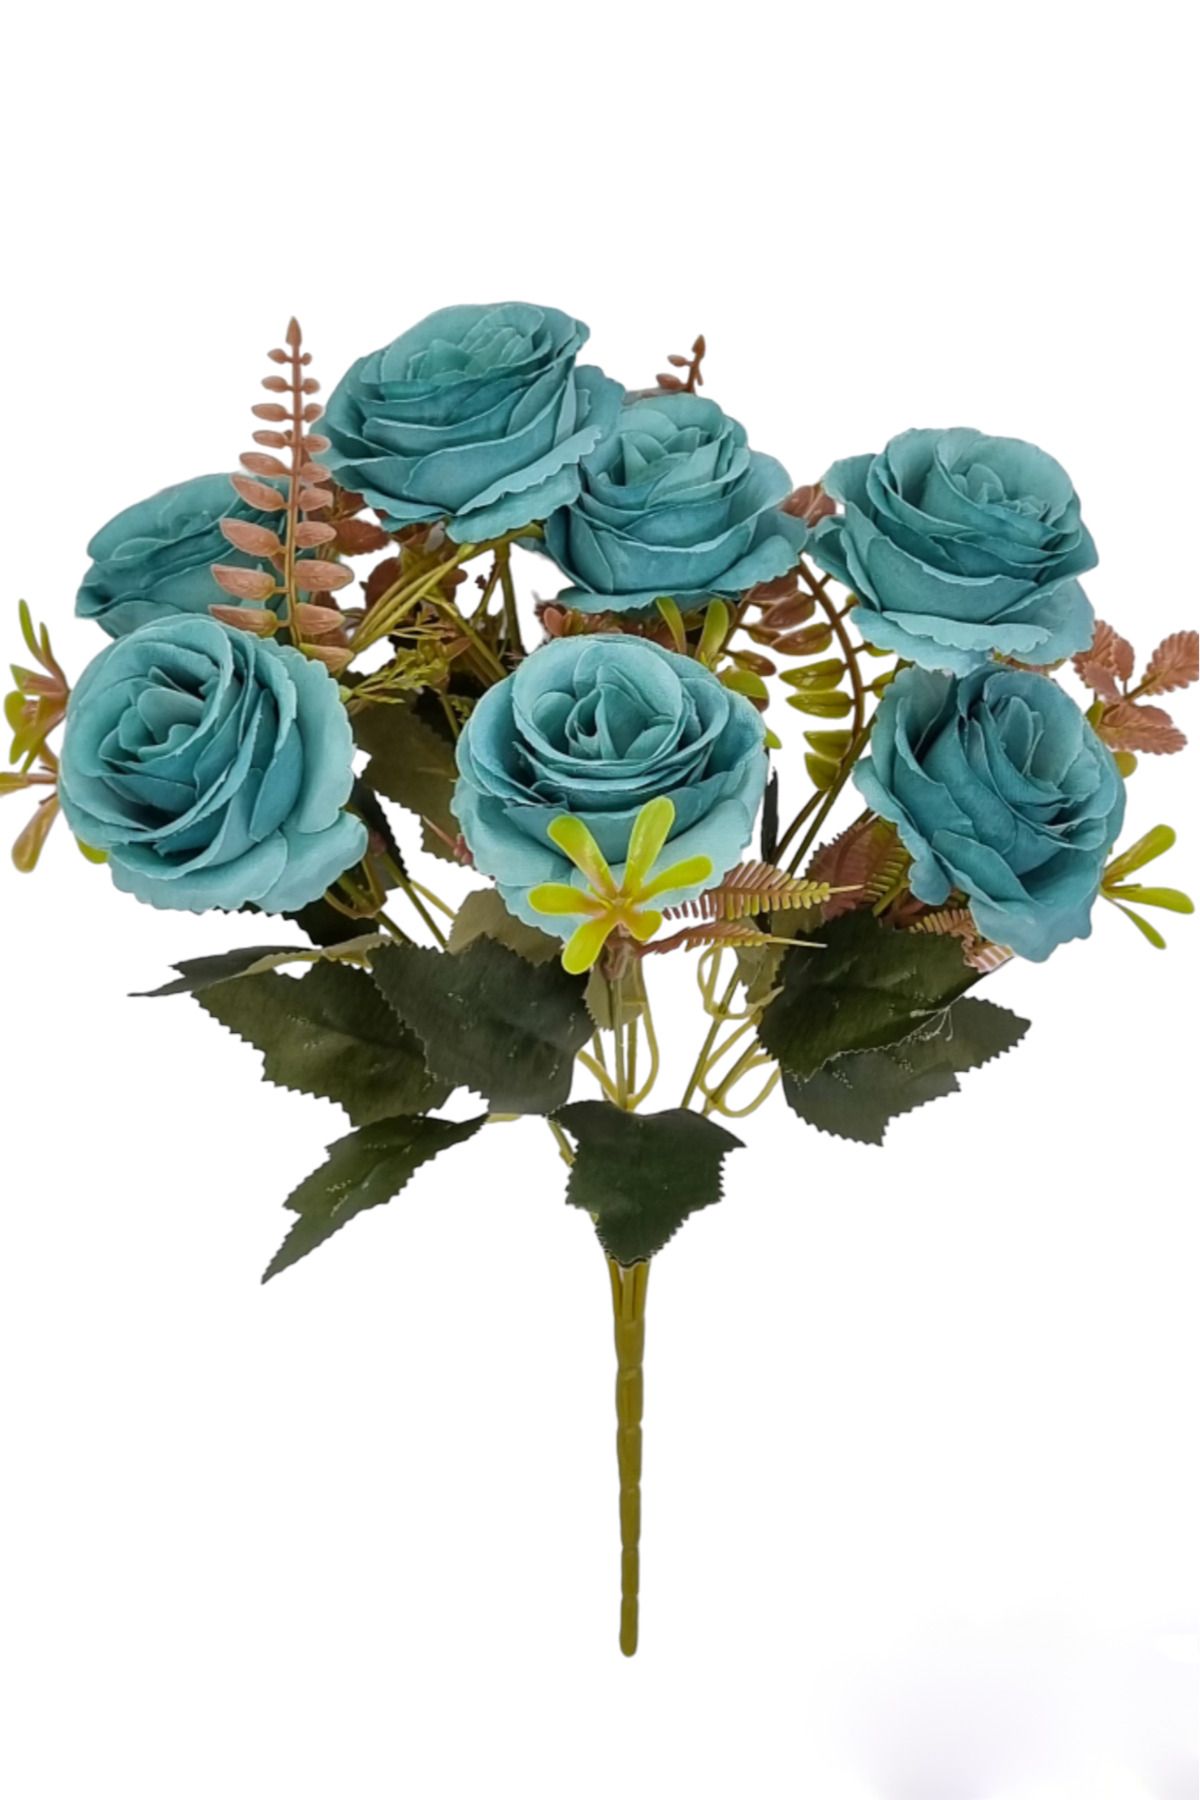 MD Aspiz Flowers 1 Adet Minyatür Gül Rosa Çiçek Demeti Gül Goncası ( 7 Dal Pampas Sarmaşık Okaliptus Sarkan Lale )